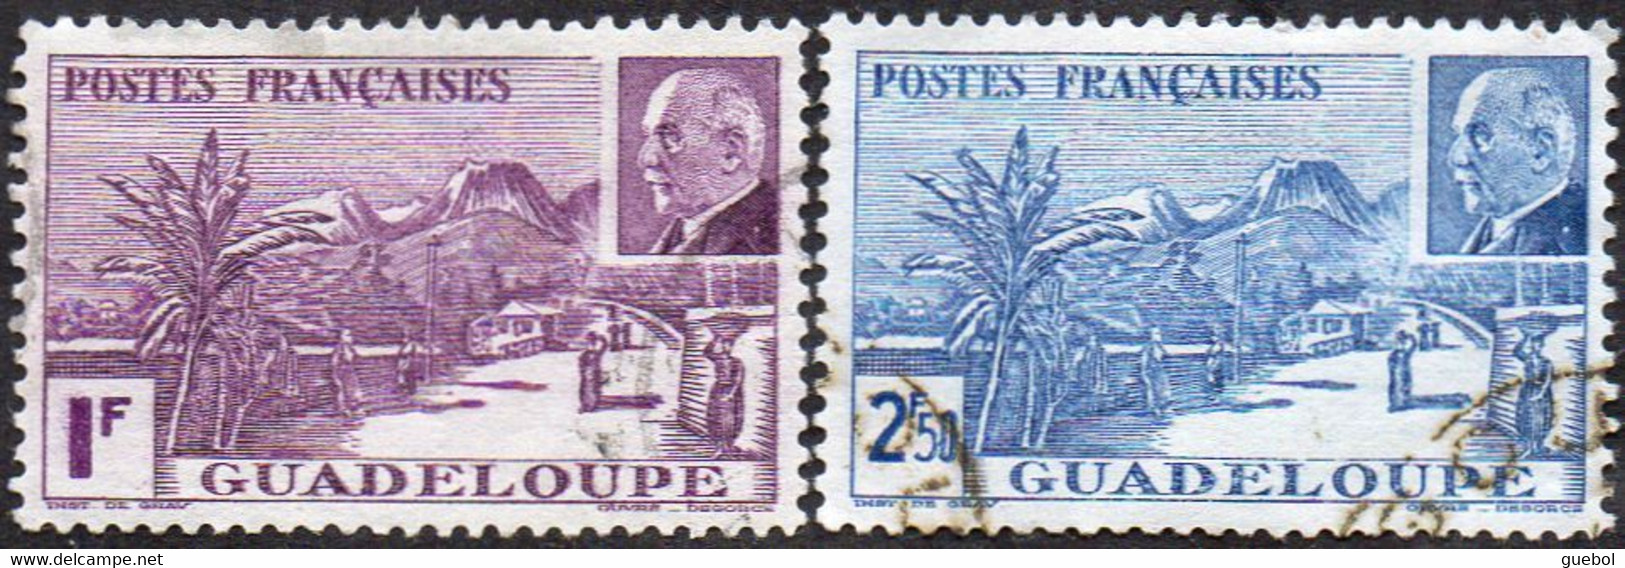 Détail De La Série Maréchal Pétain Obl. Guadeloupe N° 161 Et 162 - La Grande Soufrière - 1941 Série Maréchal Pétain